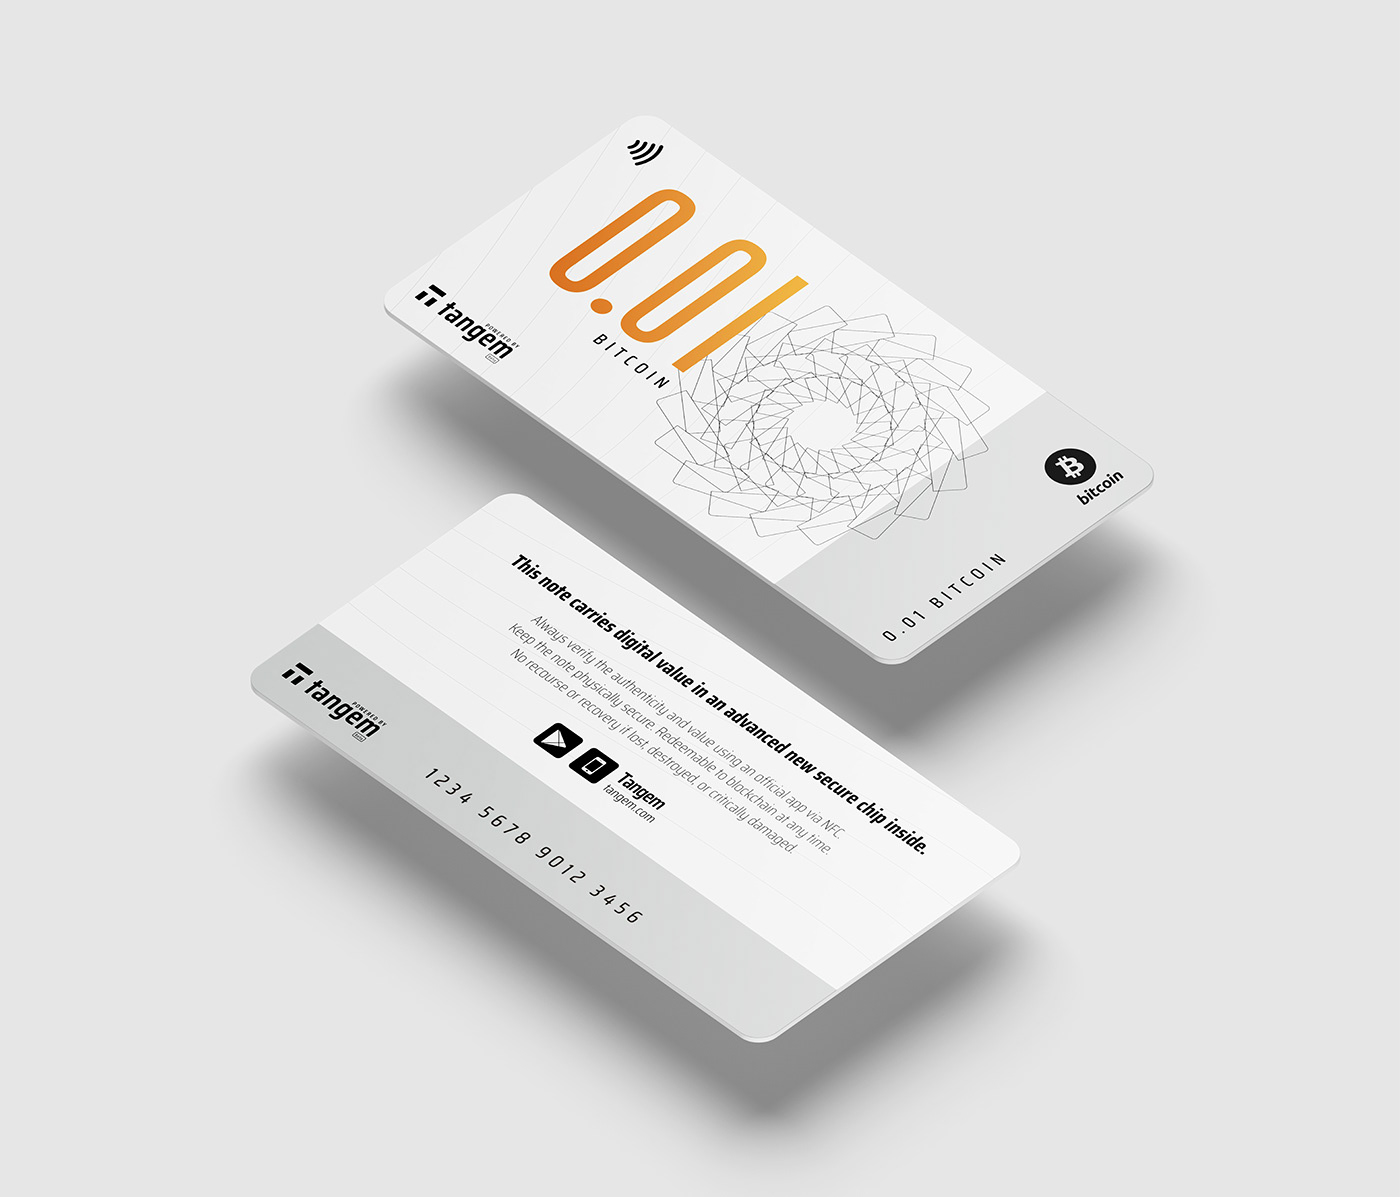 bitcoin Banknote smartcard logo JU&KE Shenzhen china